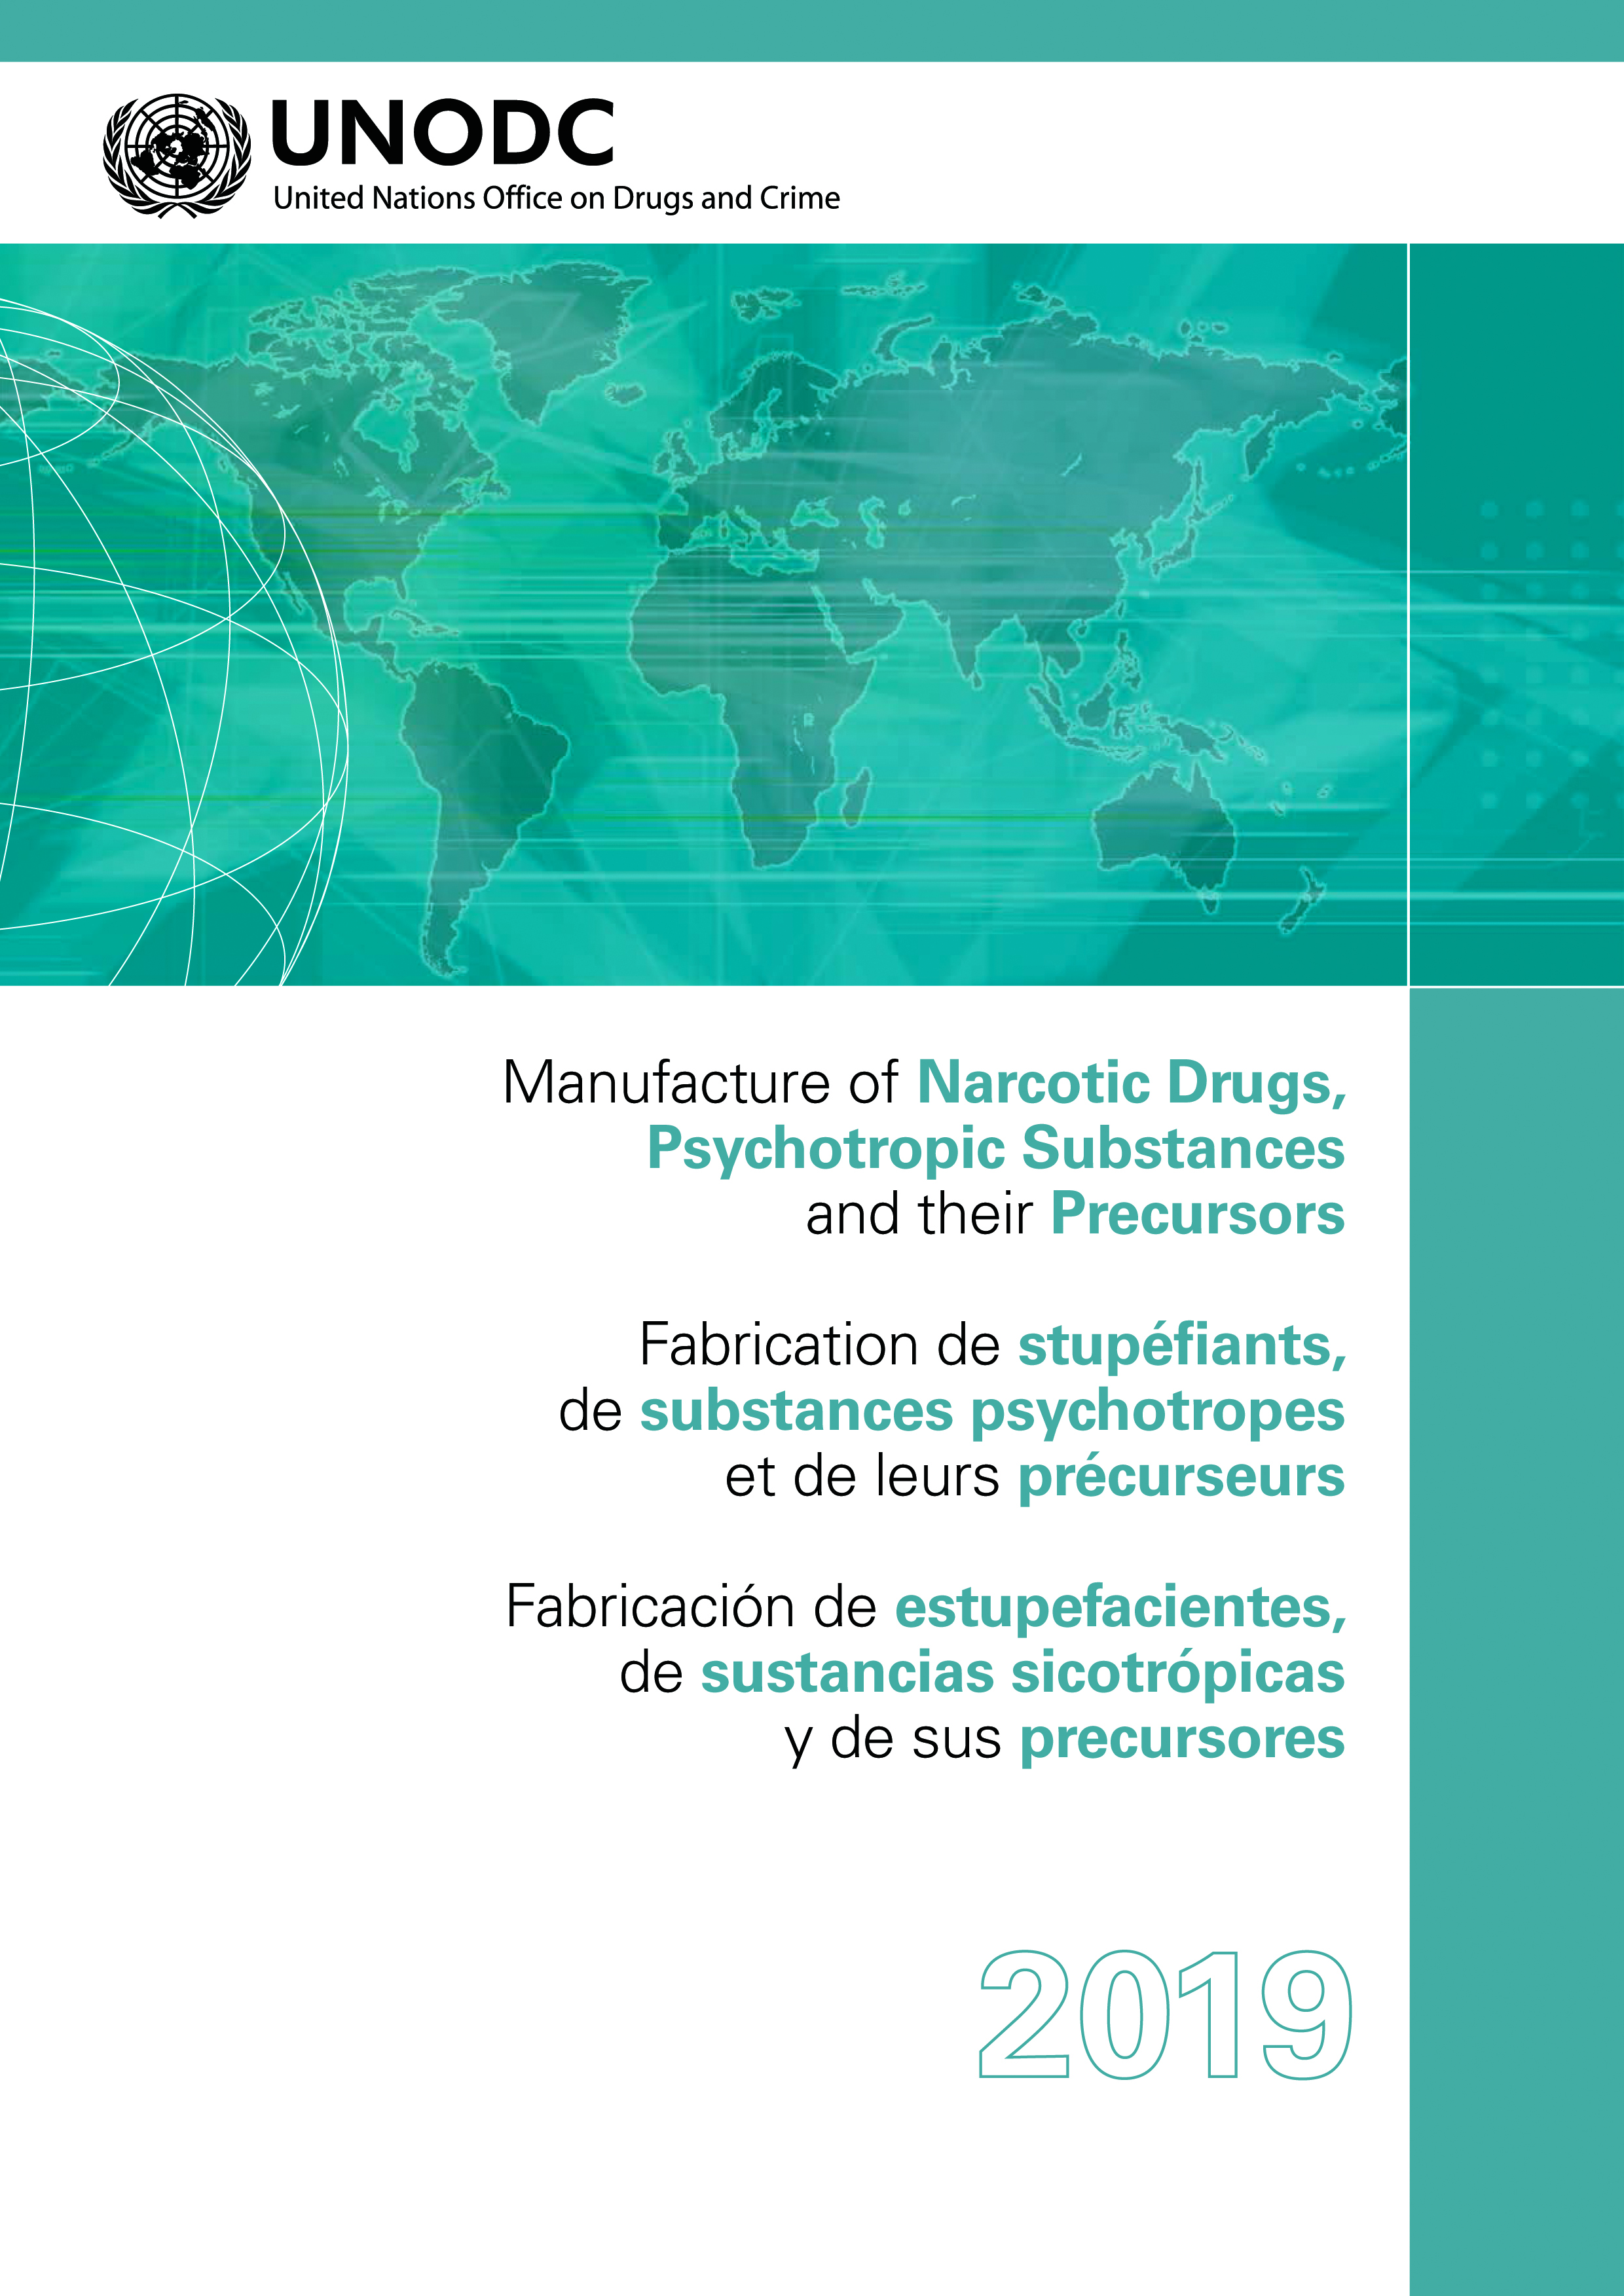 image of Fabrication de stupéfiants, de substances psychotropes et de leurs précurseurs 2019